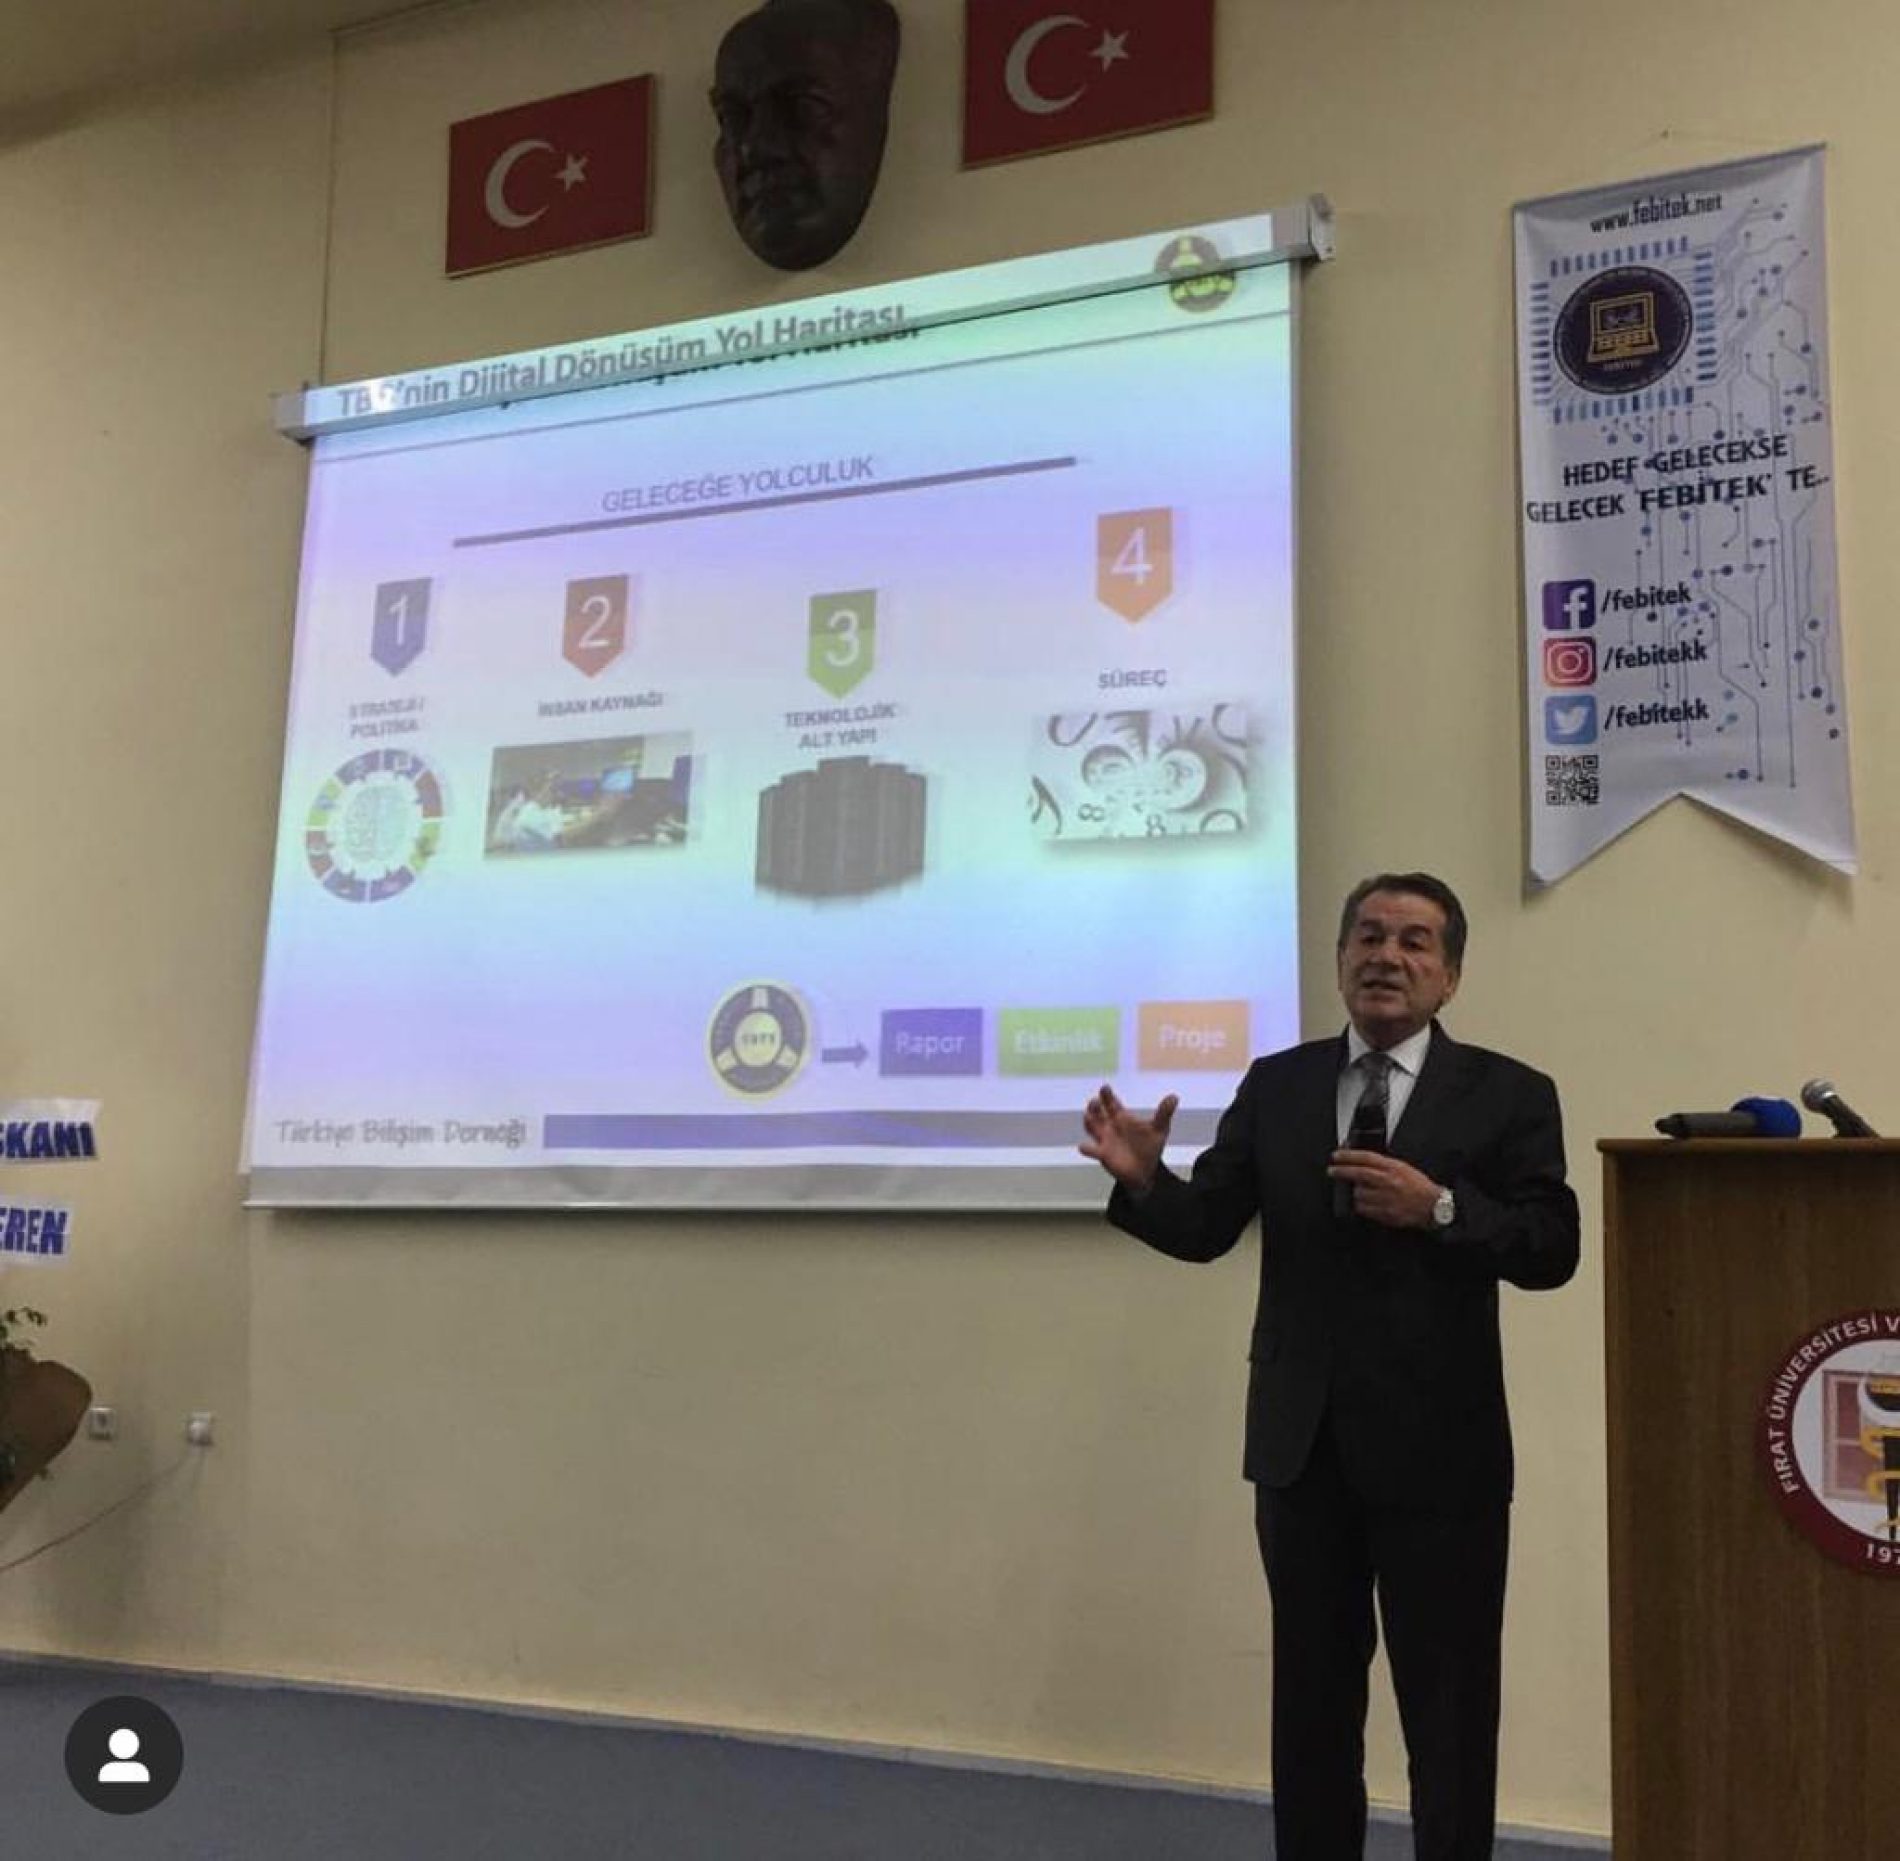 TBD Elazığ’da Dijital Dönüşüm Siber Güvenlik Konferansı Düzenledi 26.04.2019